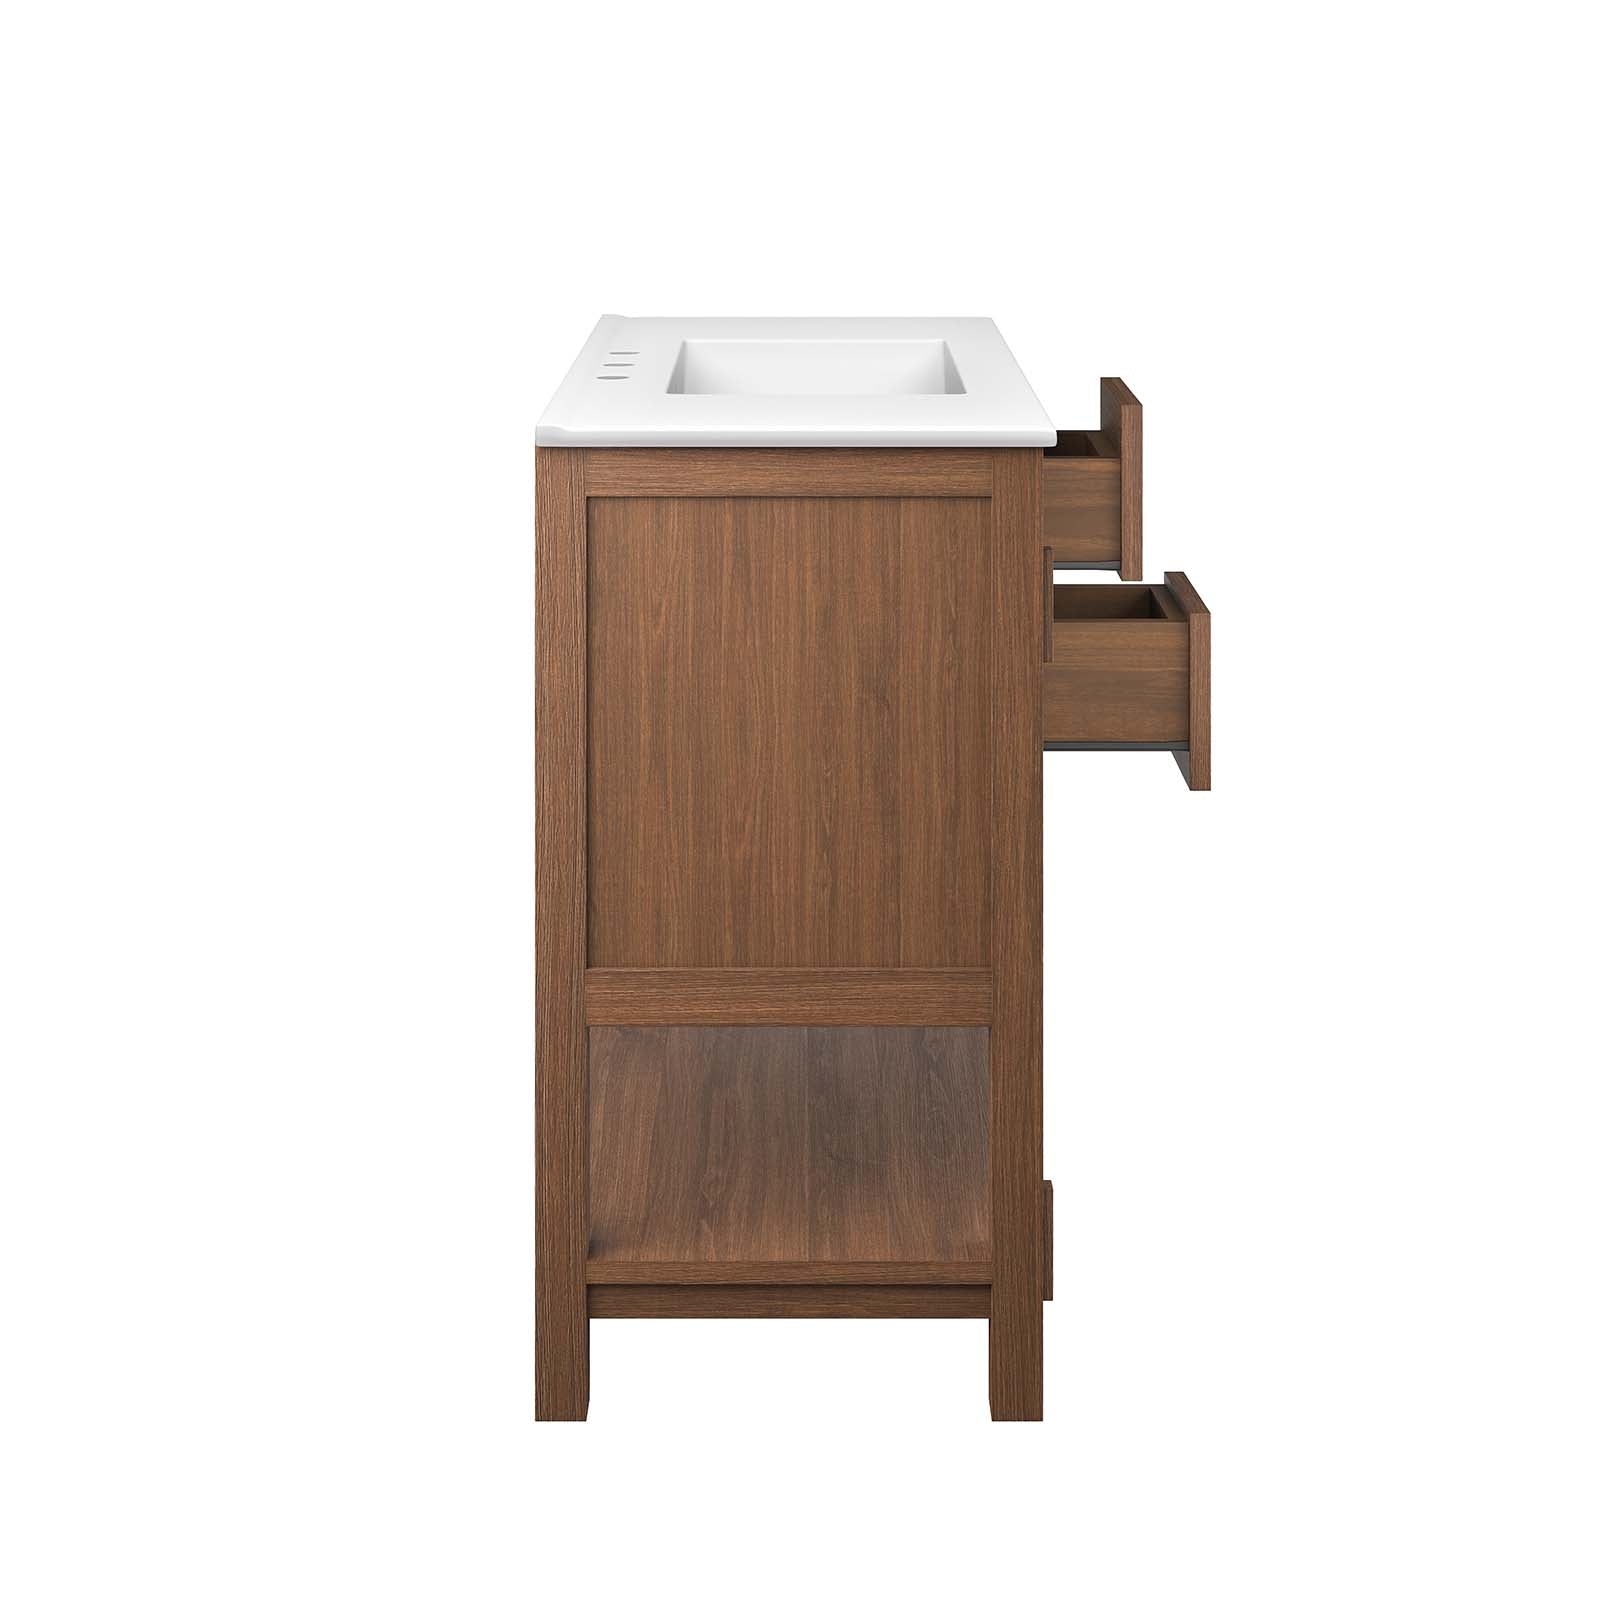 Ashlyn 36” Wood Bathroom Vanity - East Shore Modern Home Furnishings